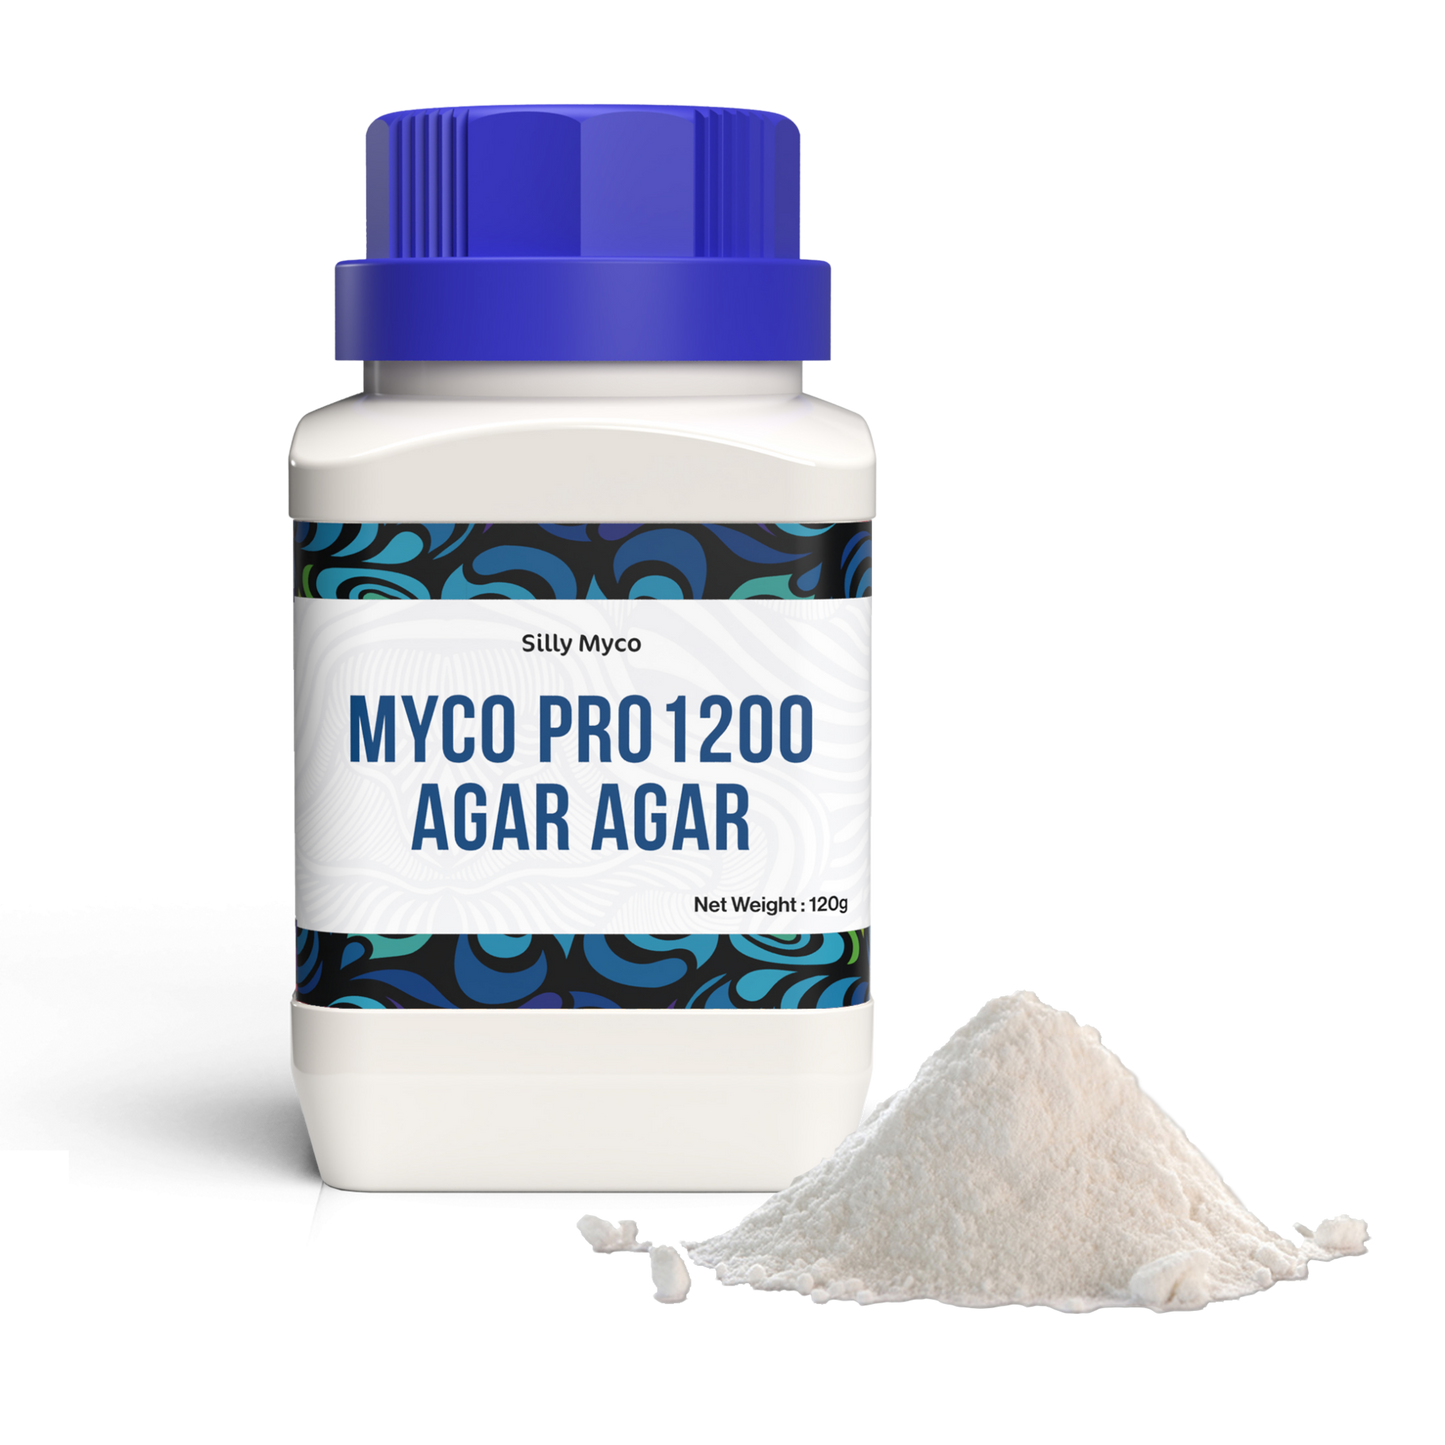 Myco Pro 1200 Agar Agar